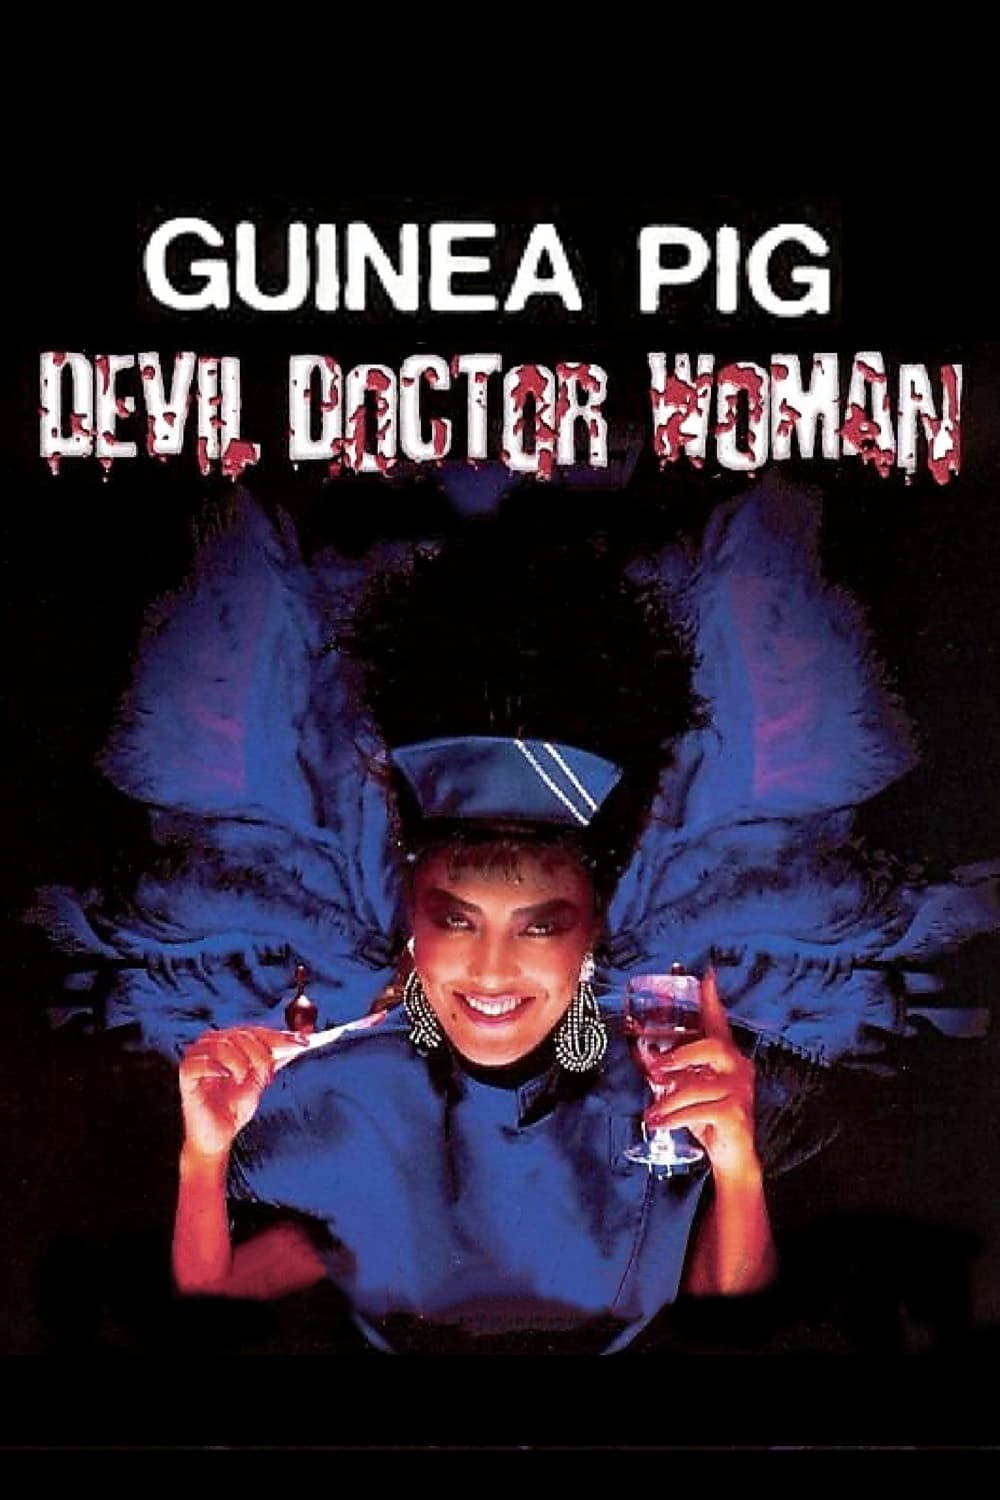 Guinea Pig Part 4: Devil Doctor Woman